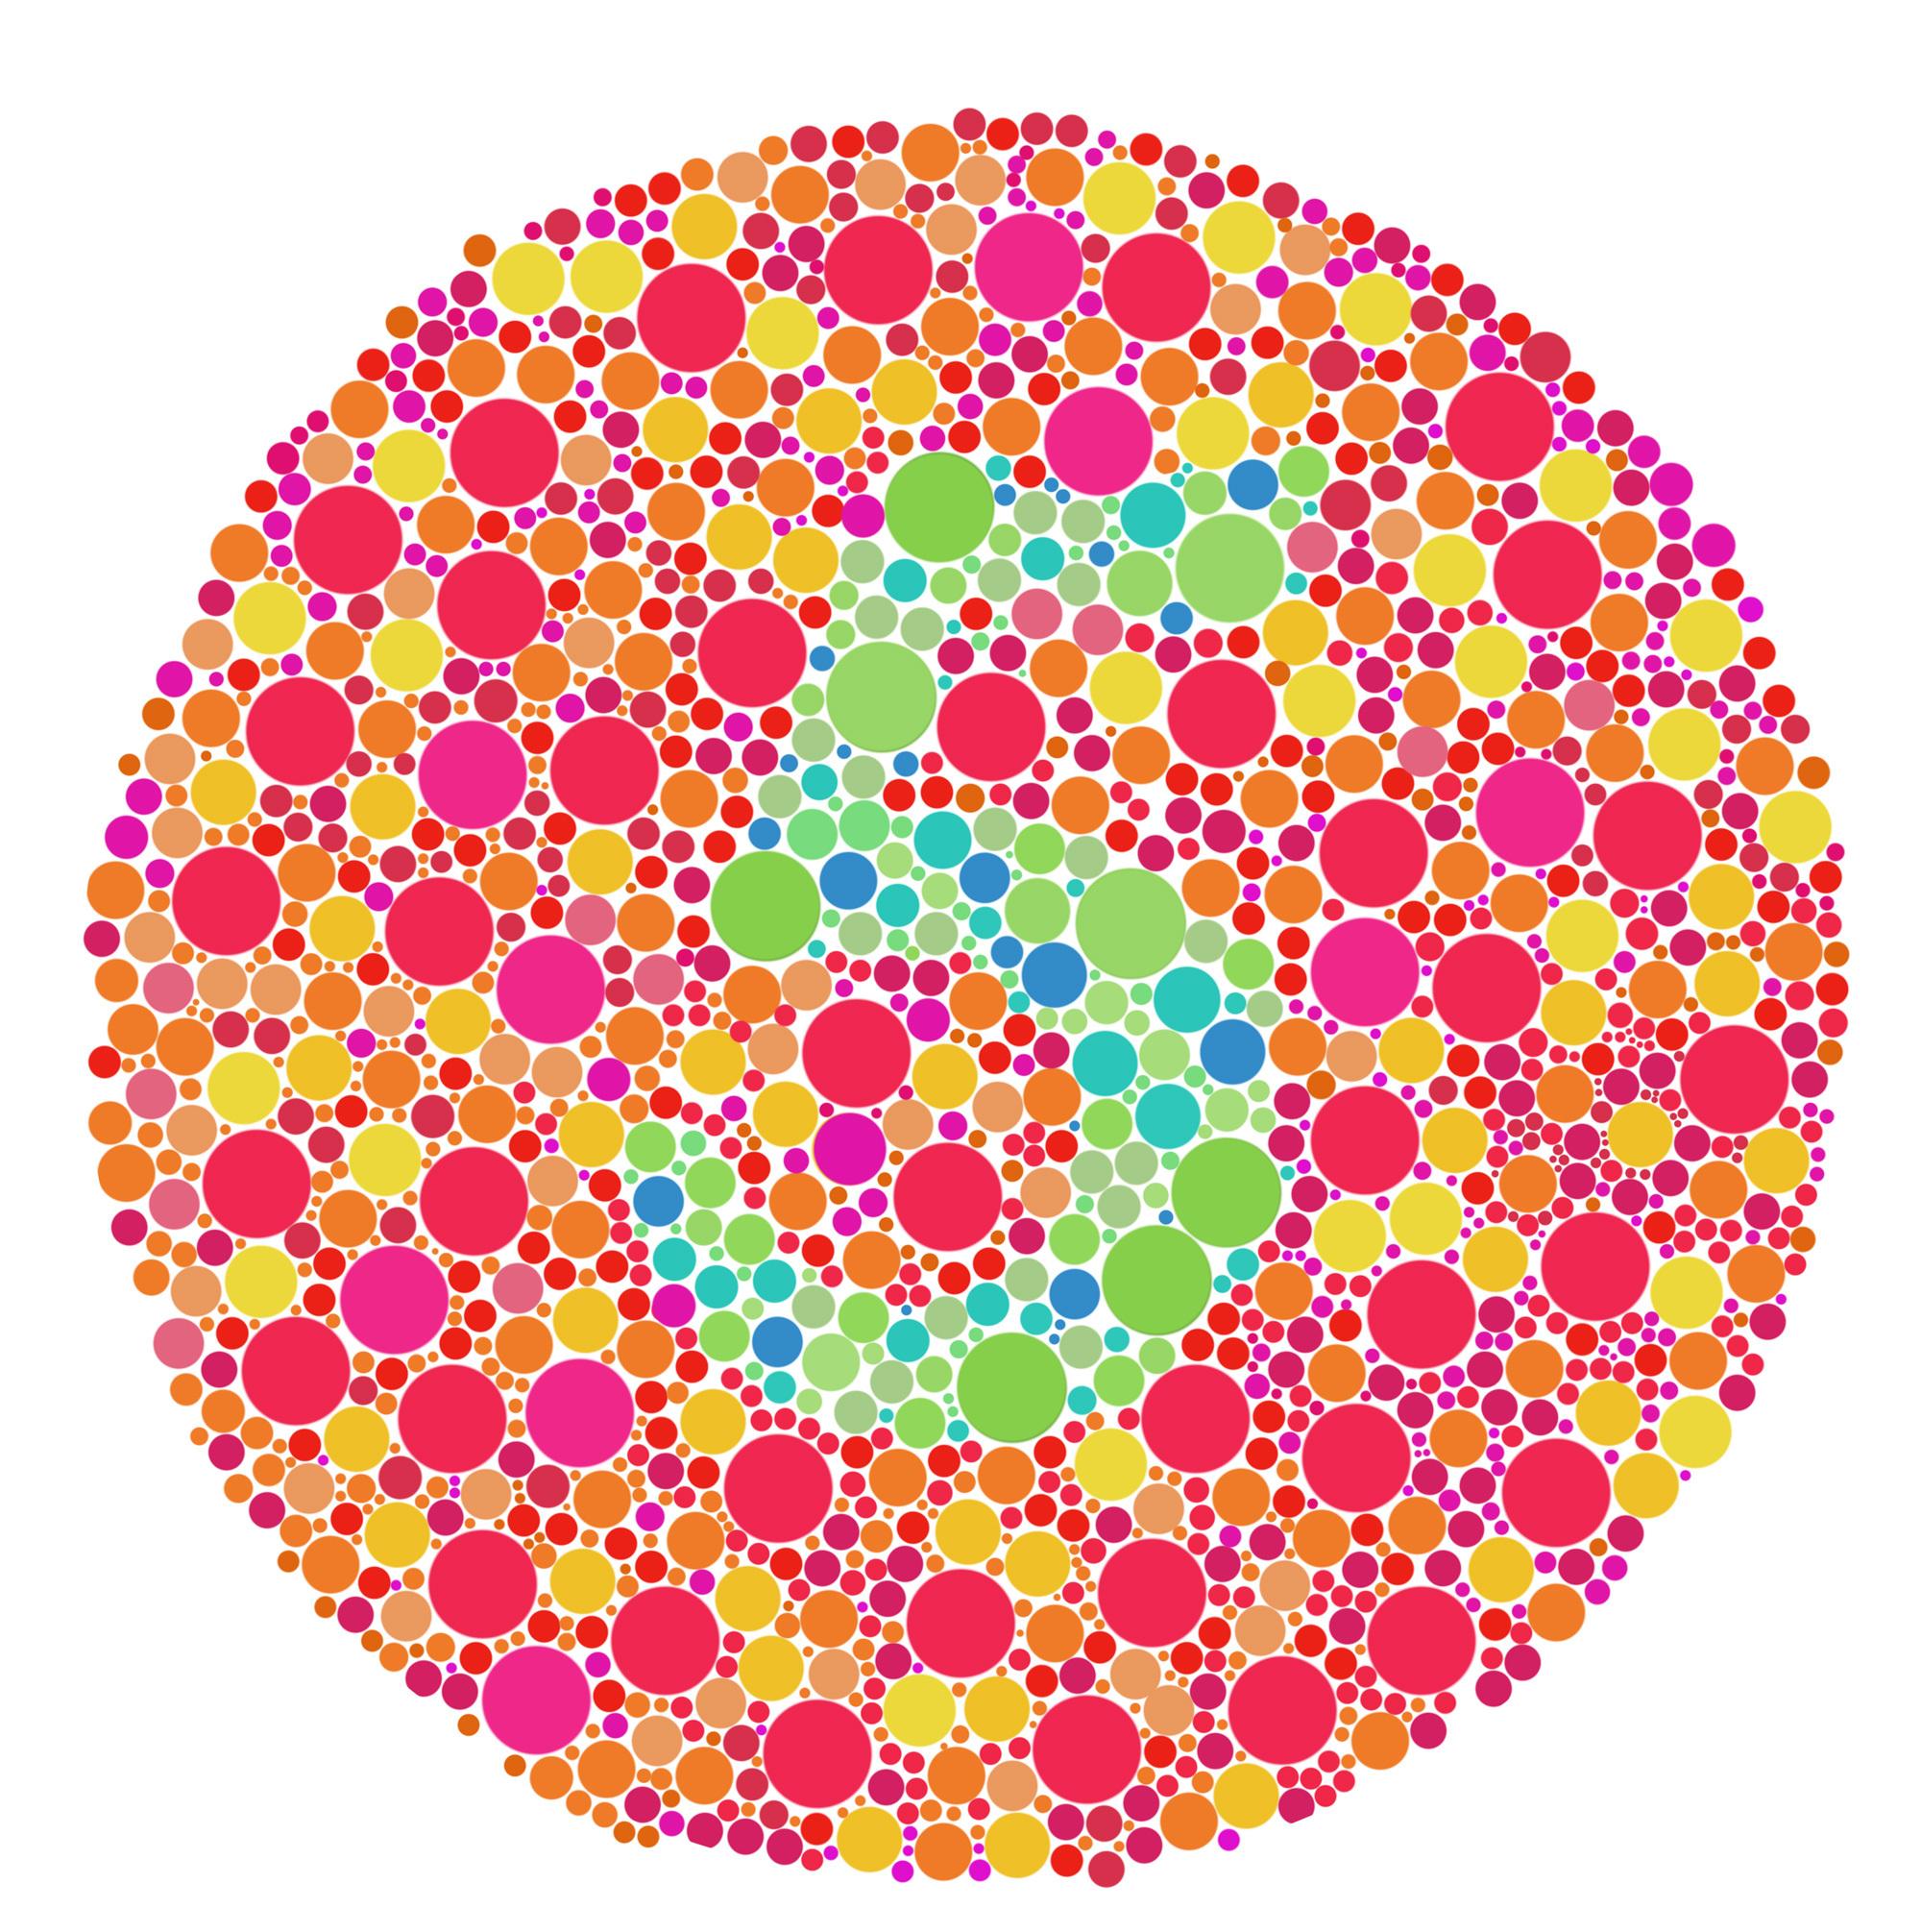 Color Blindness | MedlinePlus